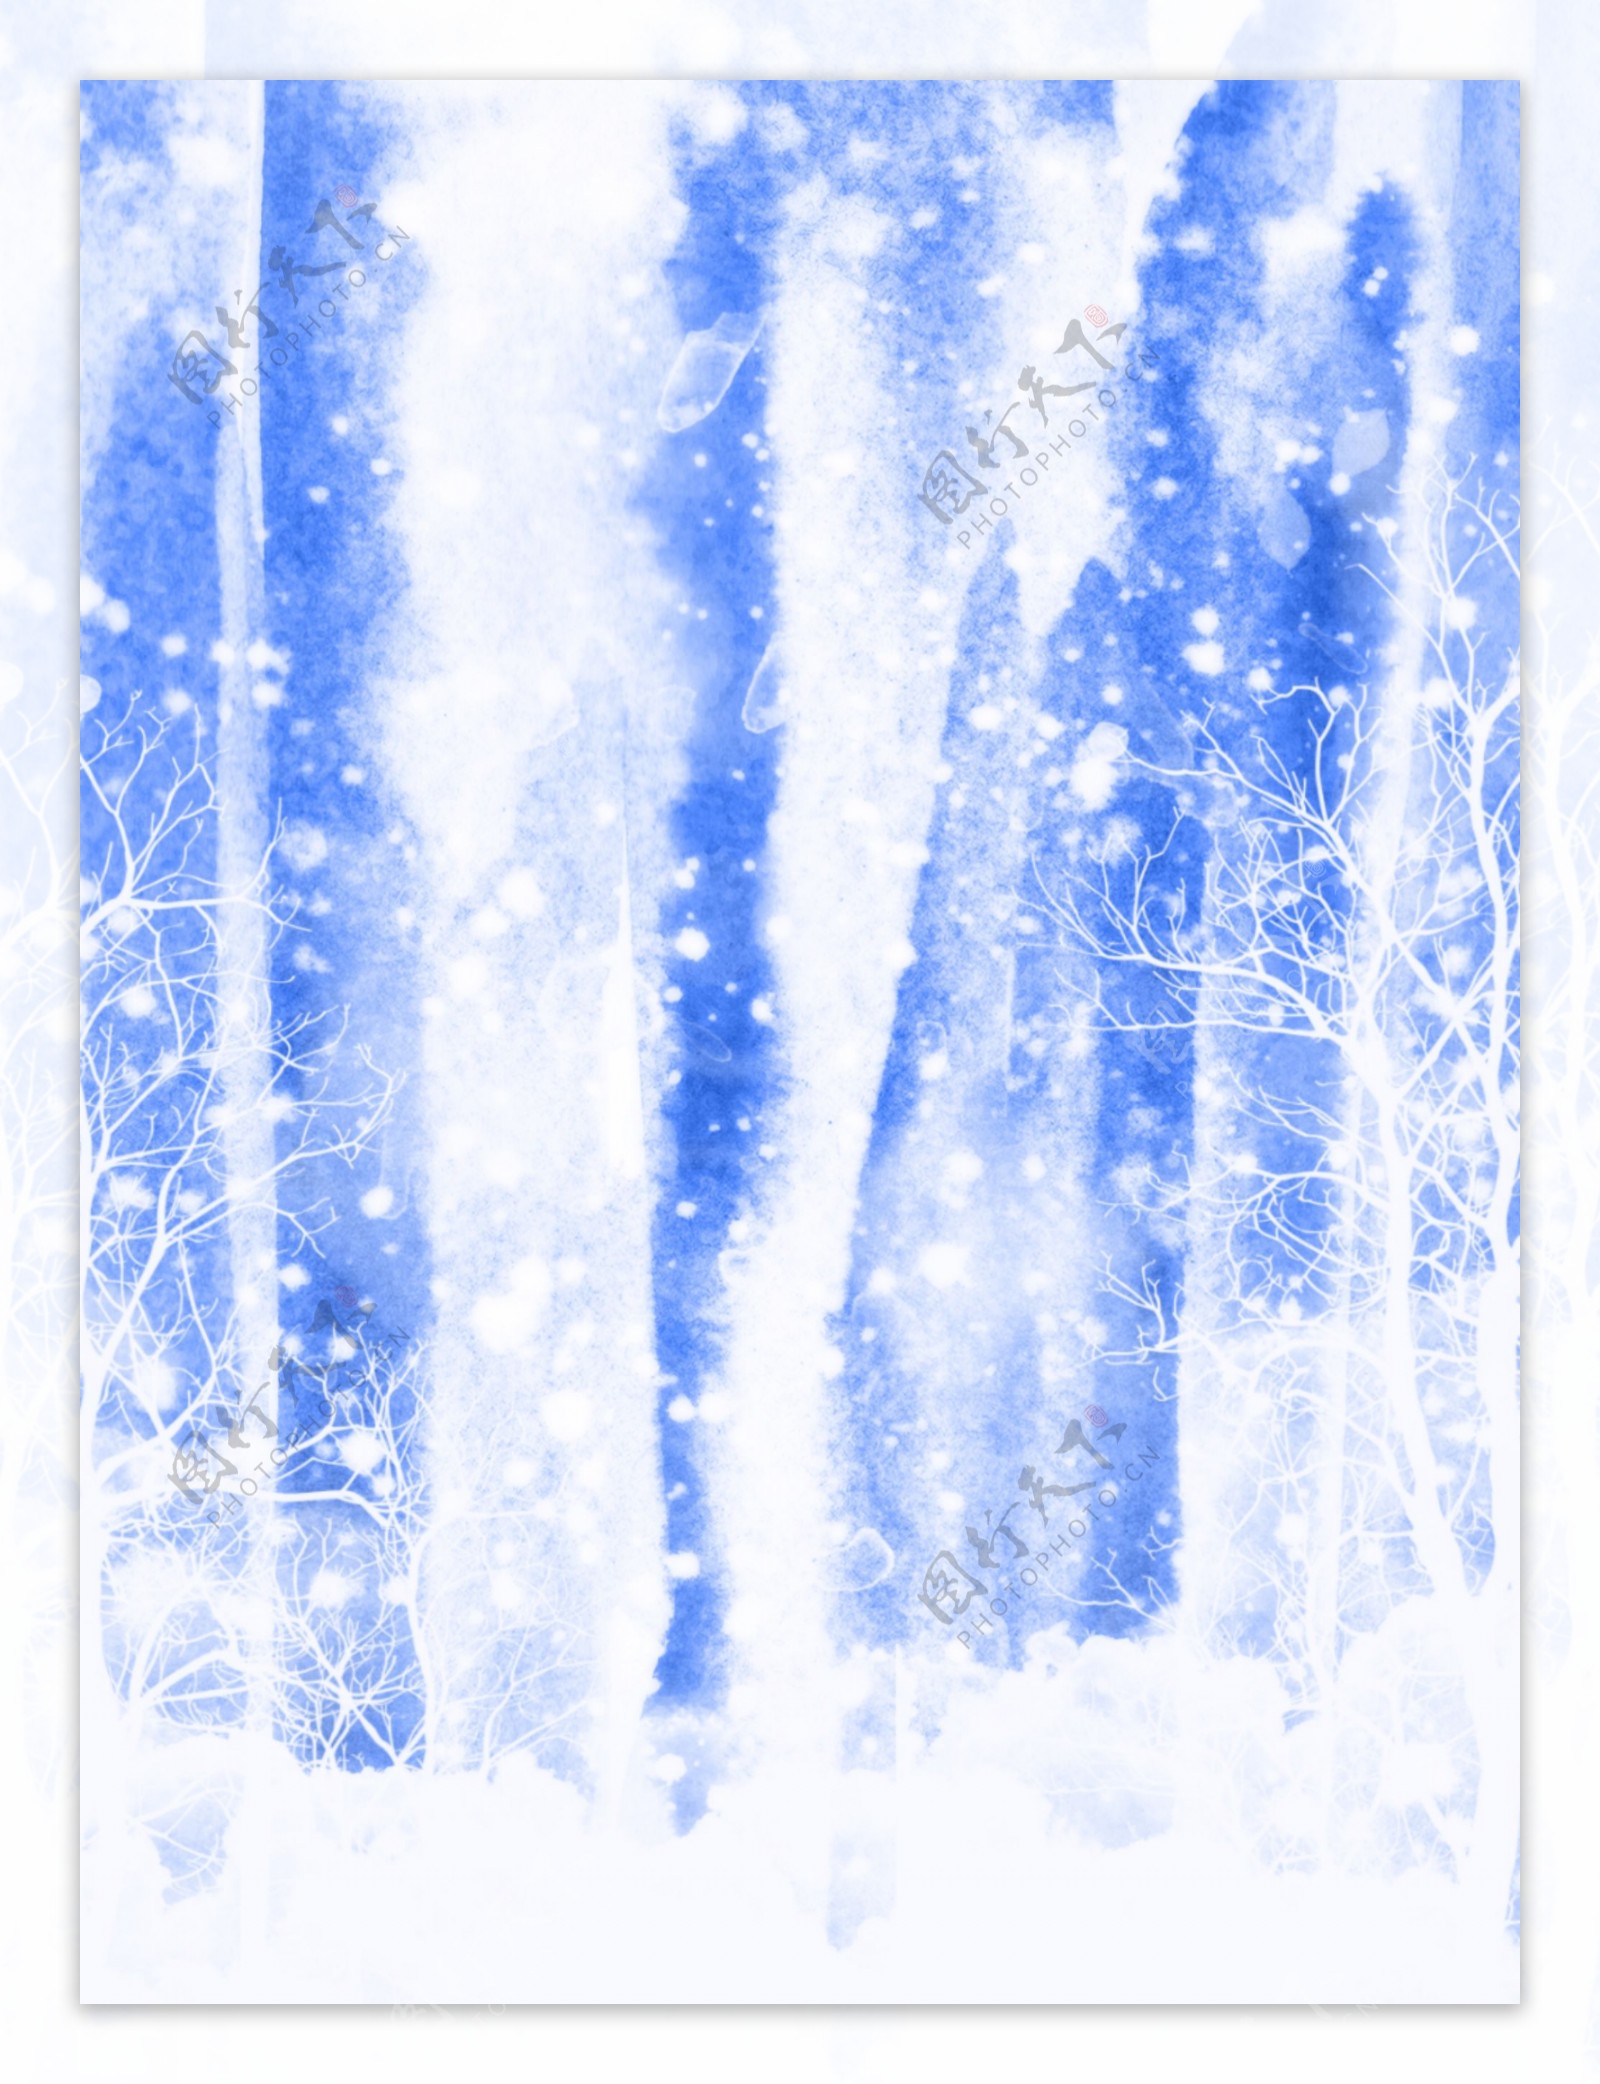 纯原创小清新了冬天蓝色雪花水彩背景